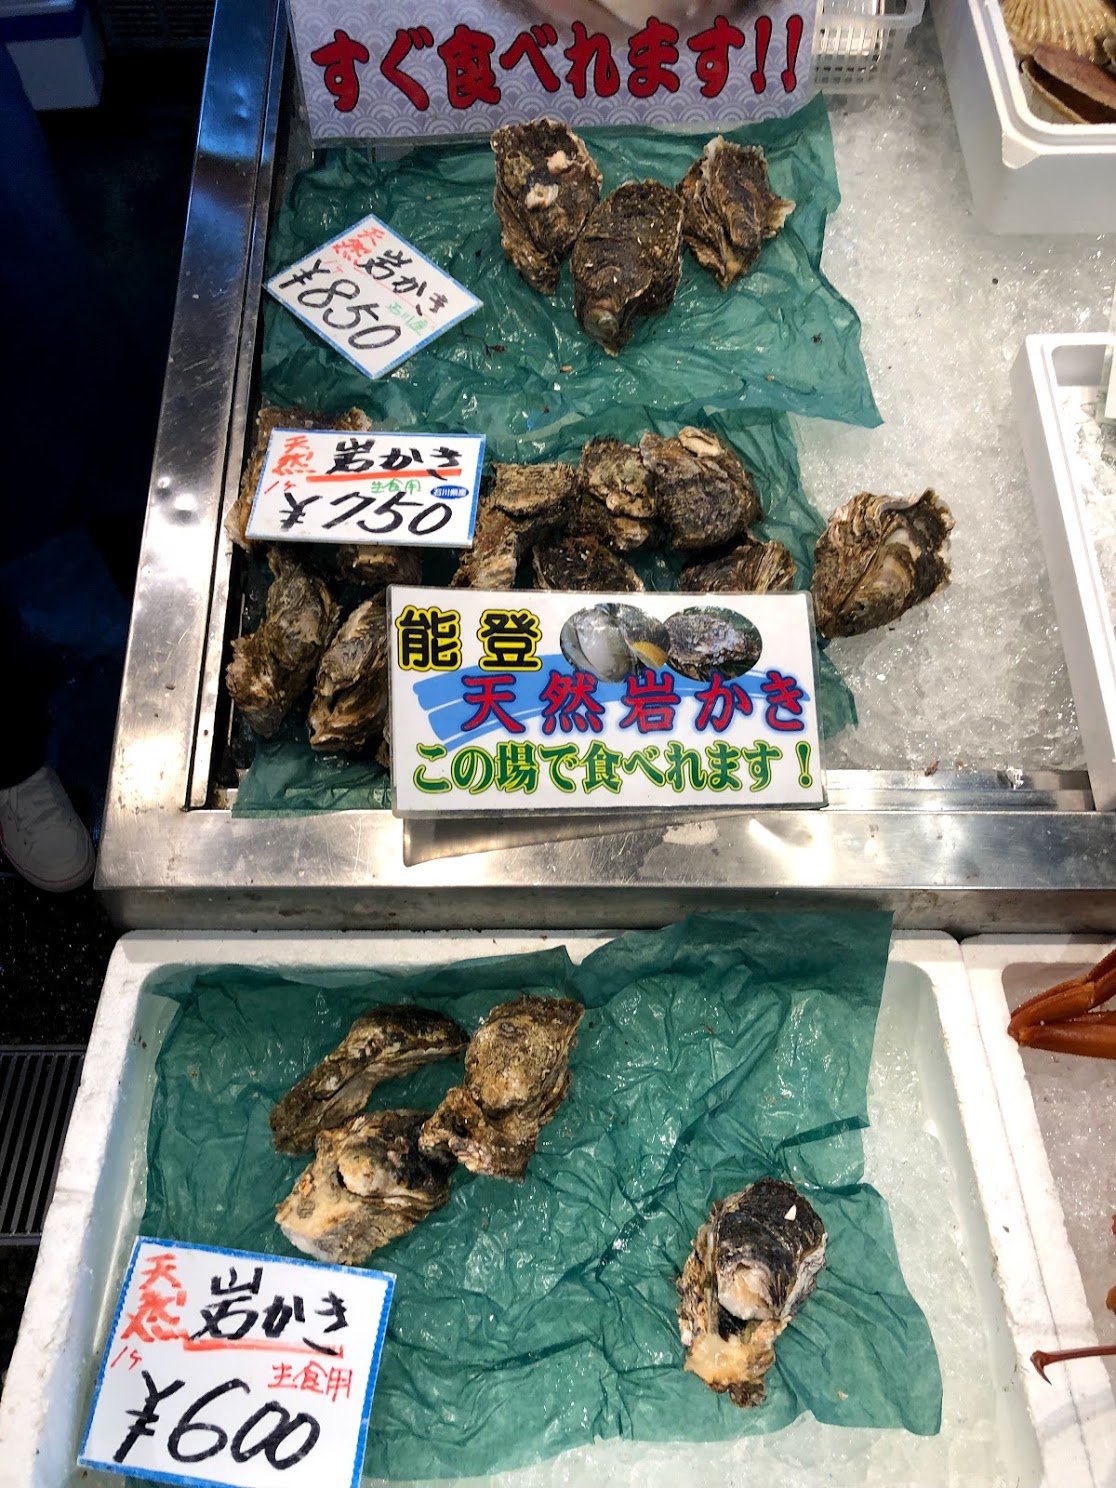 生牡蠣のサイズと値段